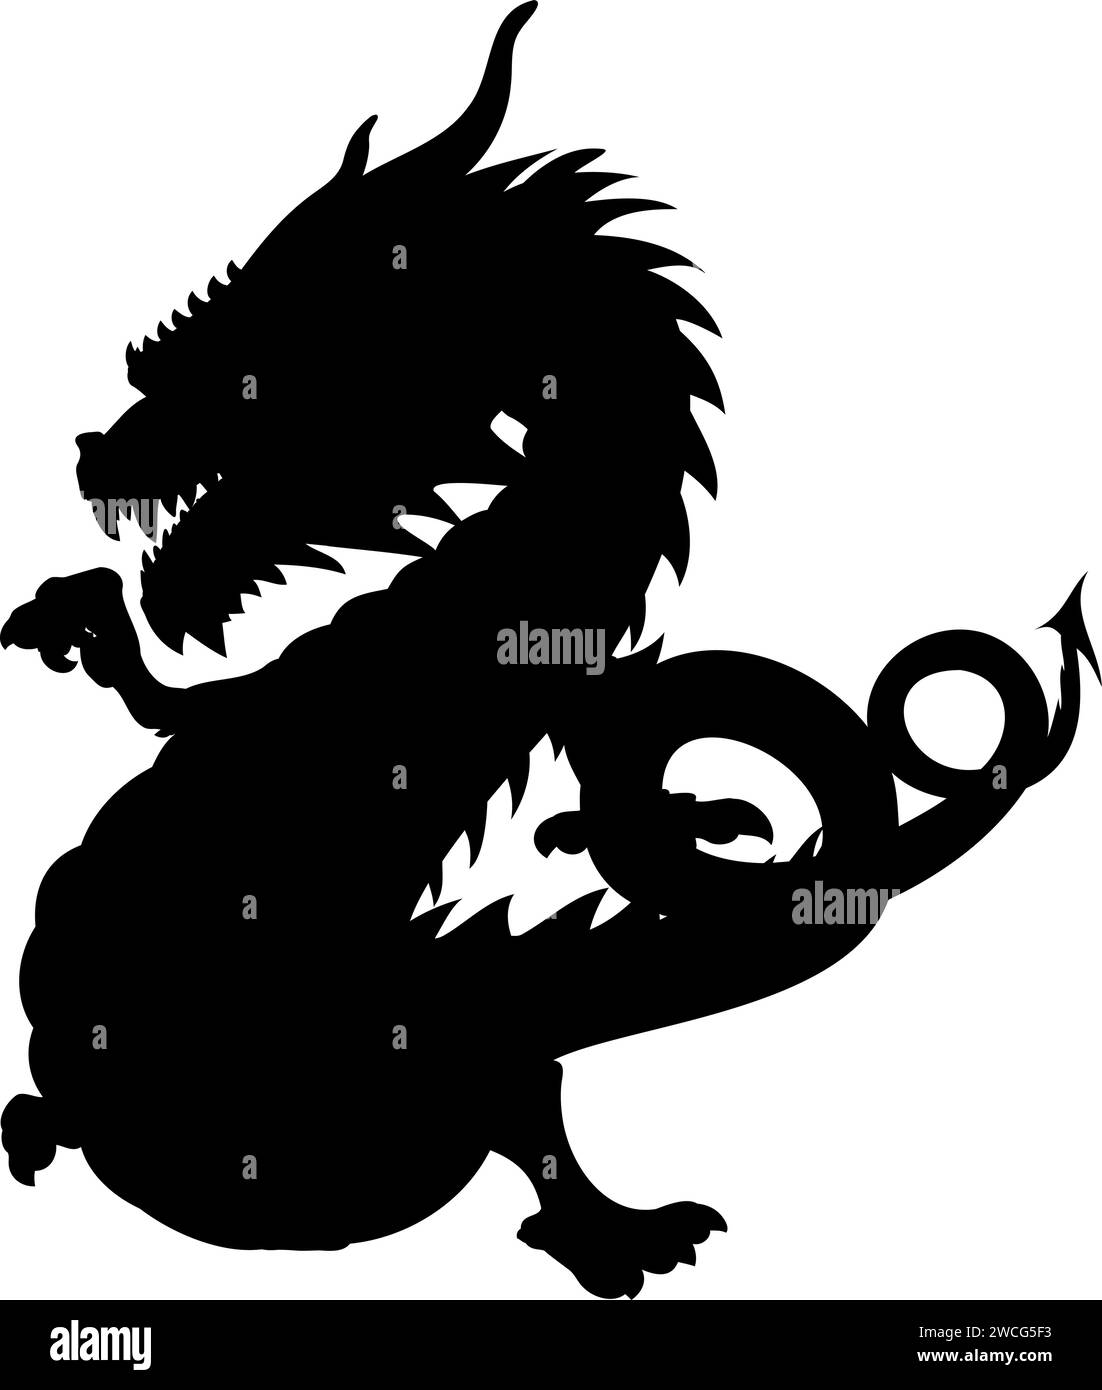 Forma di drago danzante senza ali. Illustrazione vettoriale di un drago di legno verde danzante asiatico che punta con il dito destro della zampa. Drago cinese Illustrazione Vettoriale